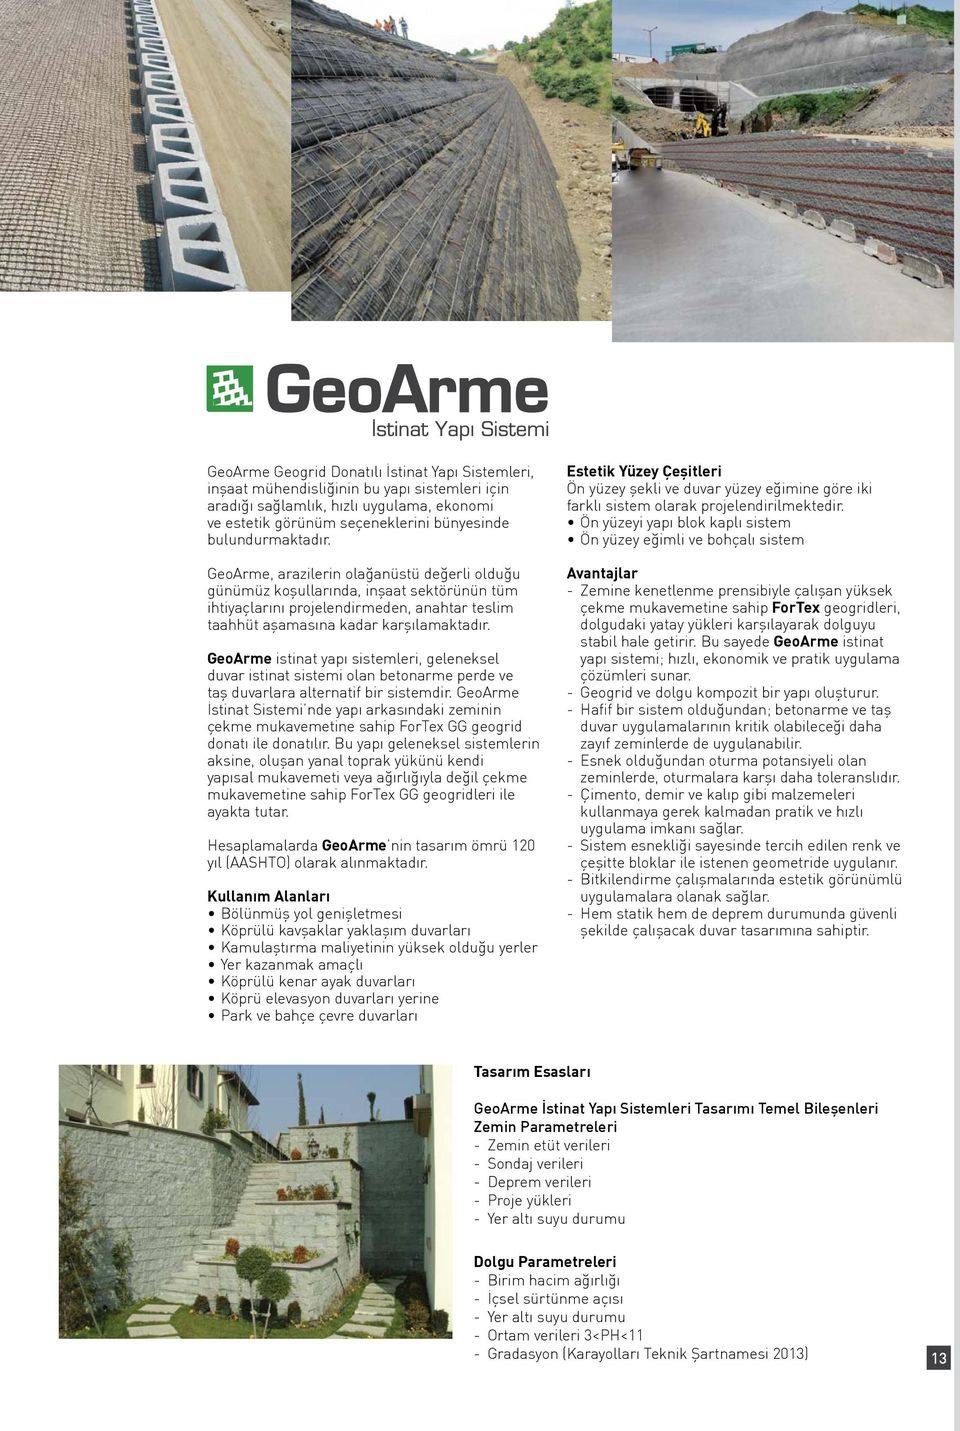 GeoArme istinat yapı sistemleri, geleneksel duvar istinat sistemi olan betonarme perde ve taş duvarlara alternatif bir sistemdir.